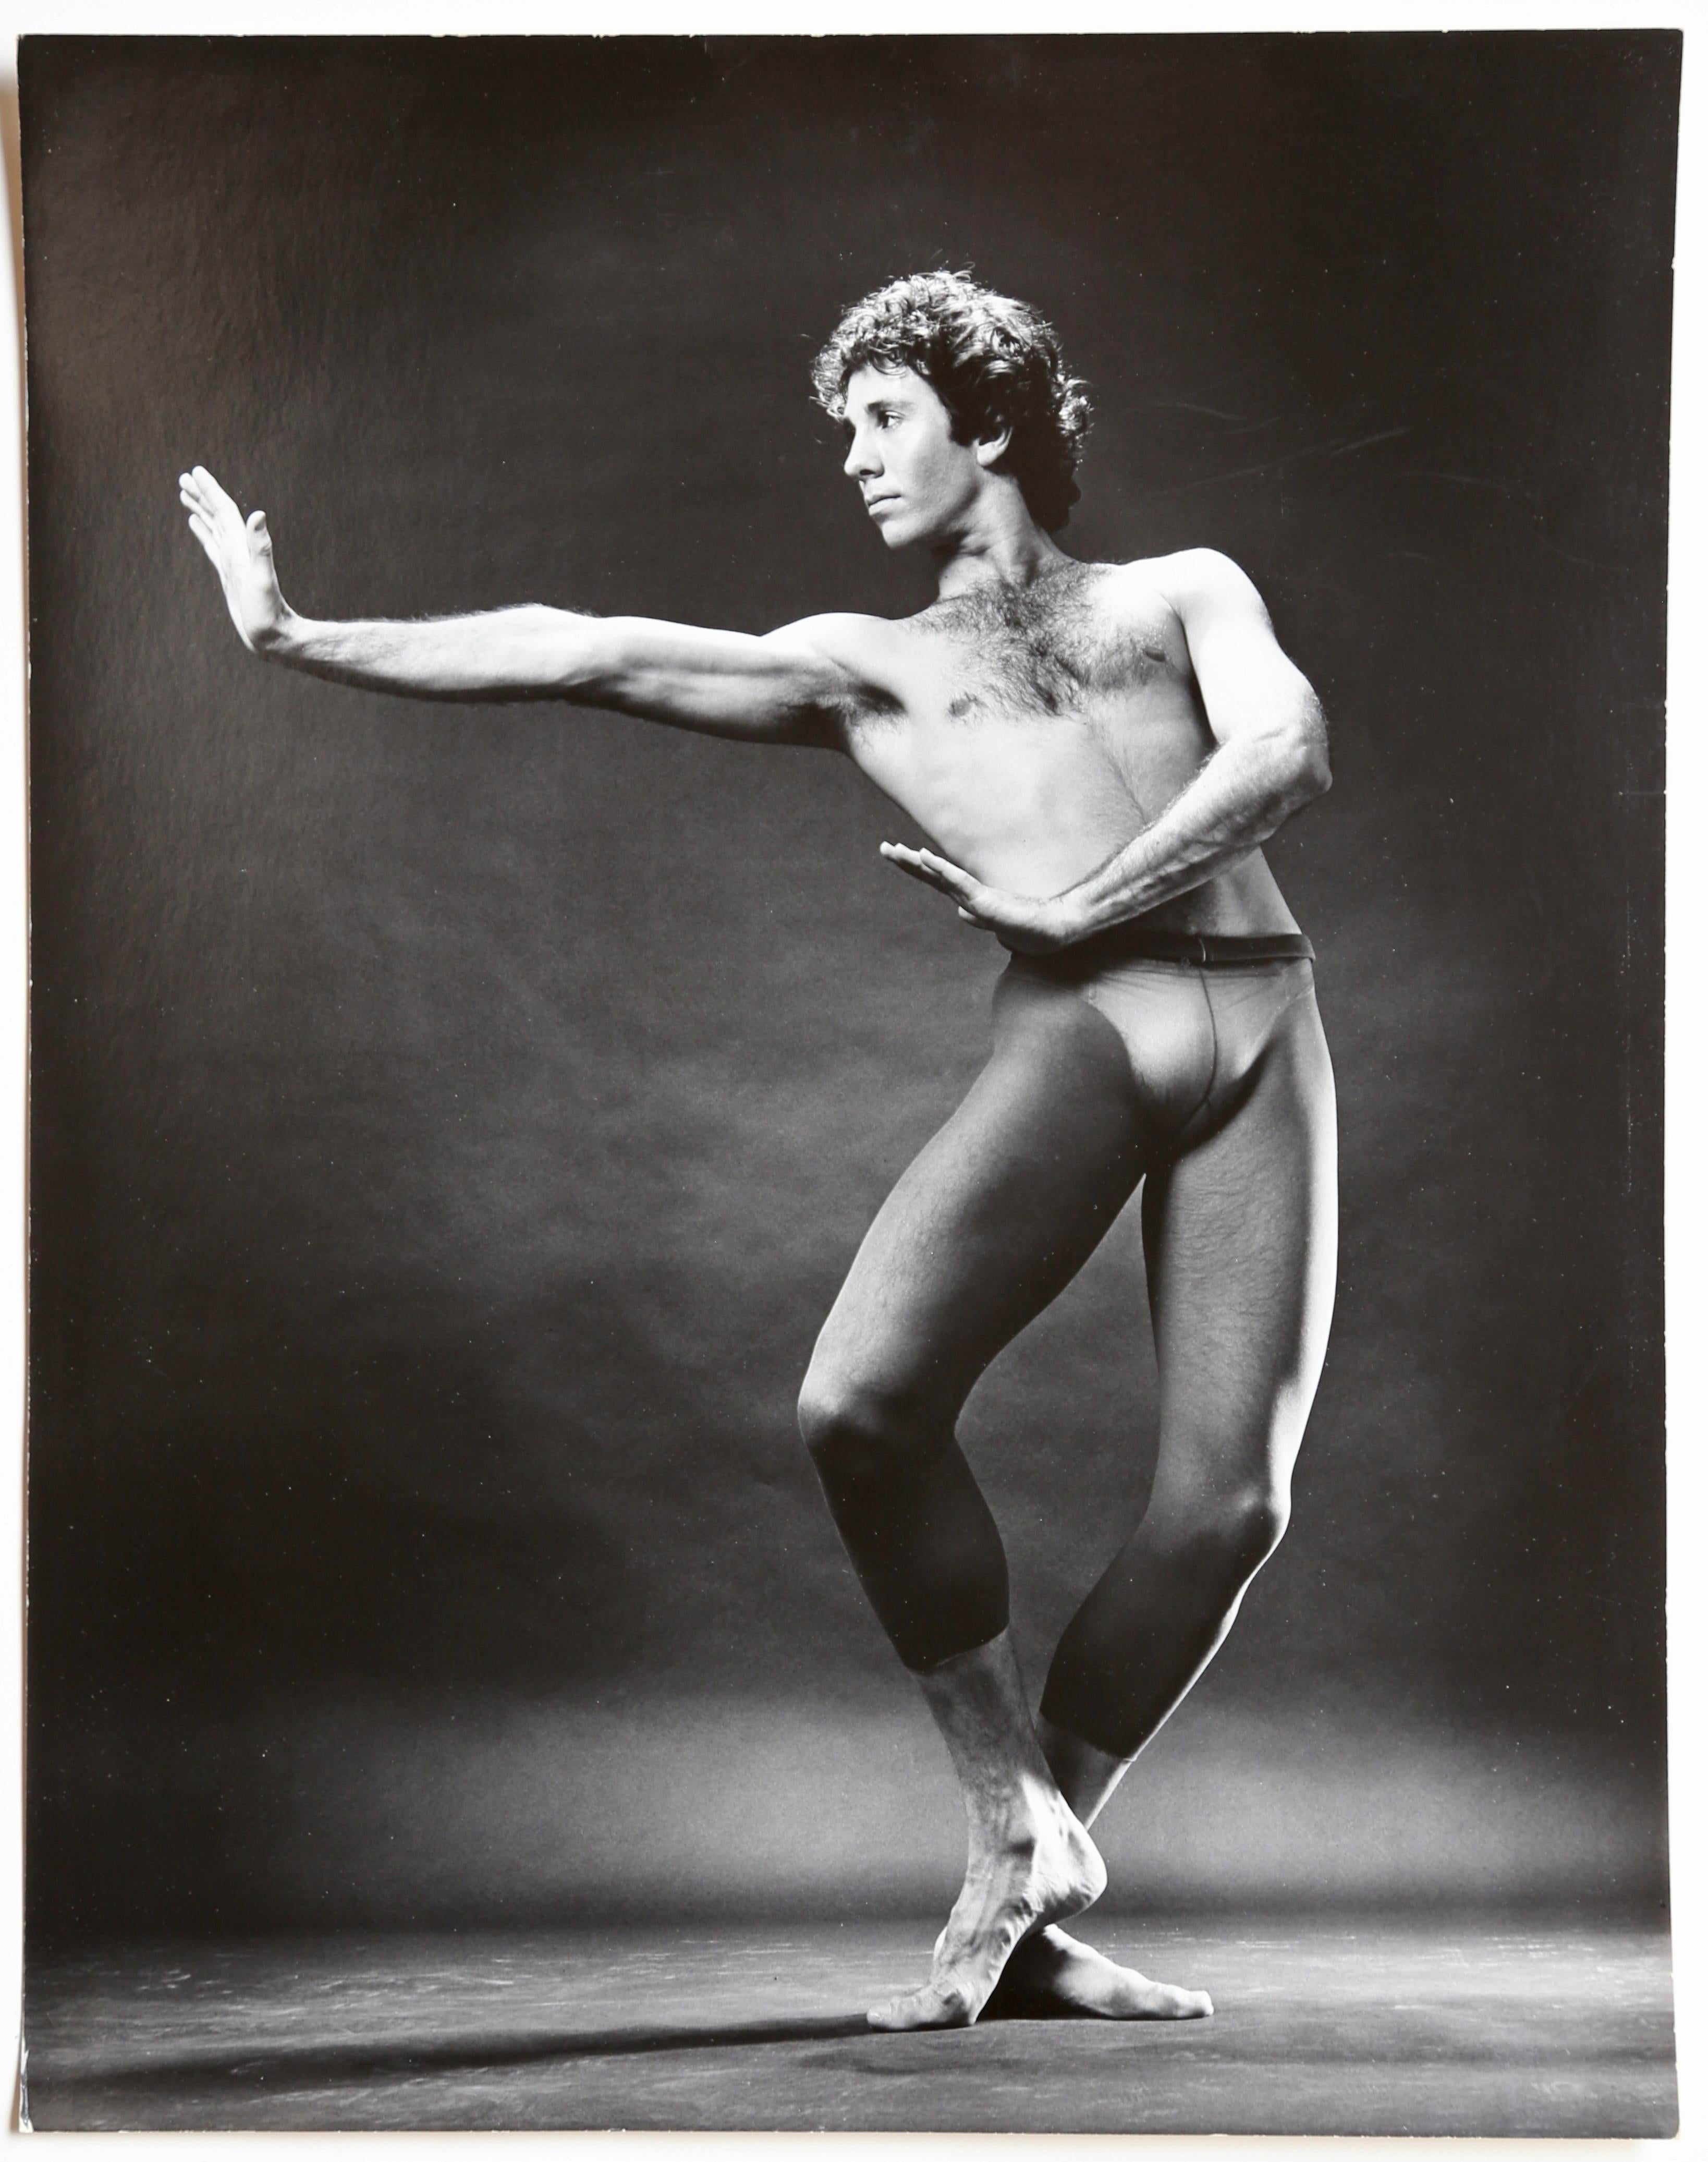 Foto von Jack Mitchell aus der Mitte des 20. Jahrhunderts mit dem internationalen Balletttänzer Jan Nyuts im Jahr 1977. Nyuts war eine hochgelobte Solotänzerin, die mit dem Nederlands Dans Theatre, Maurice Bejart, dem San Francisco Ballet, dem